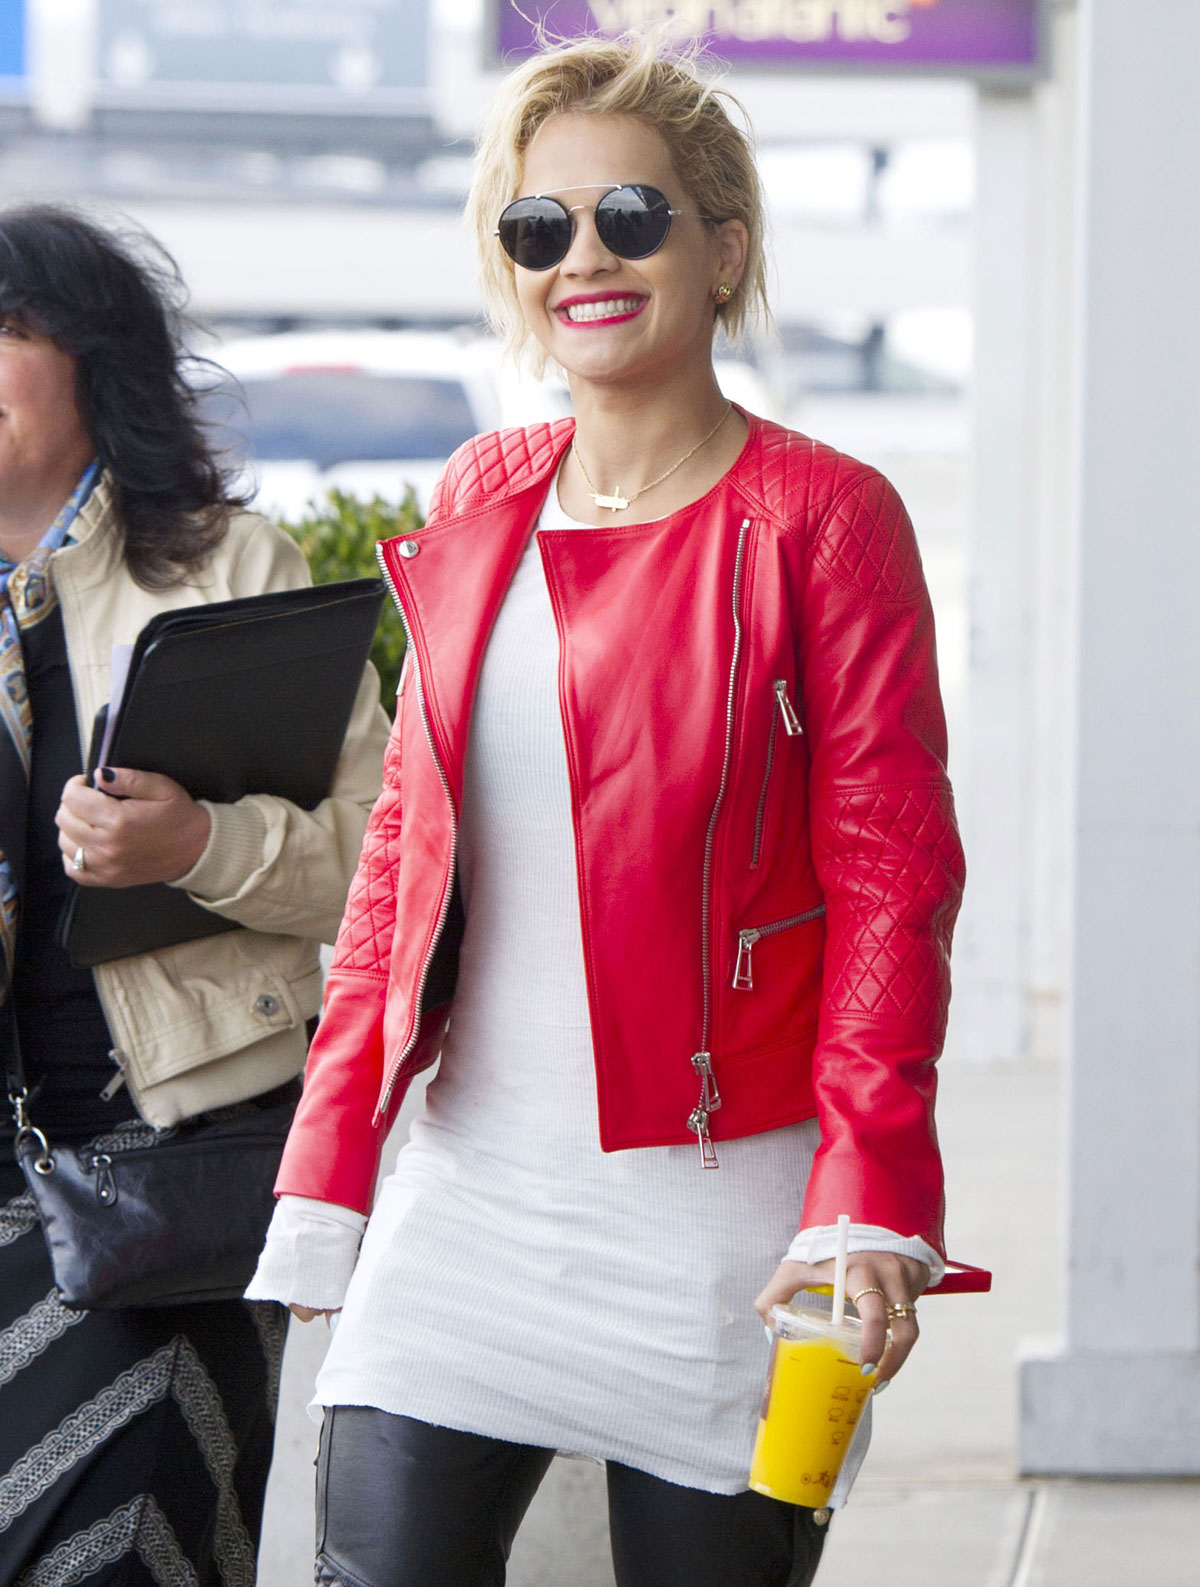 Rita Ora at JFK airport in NYC